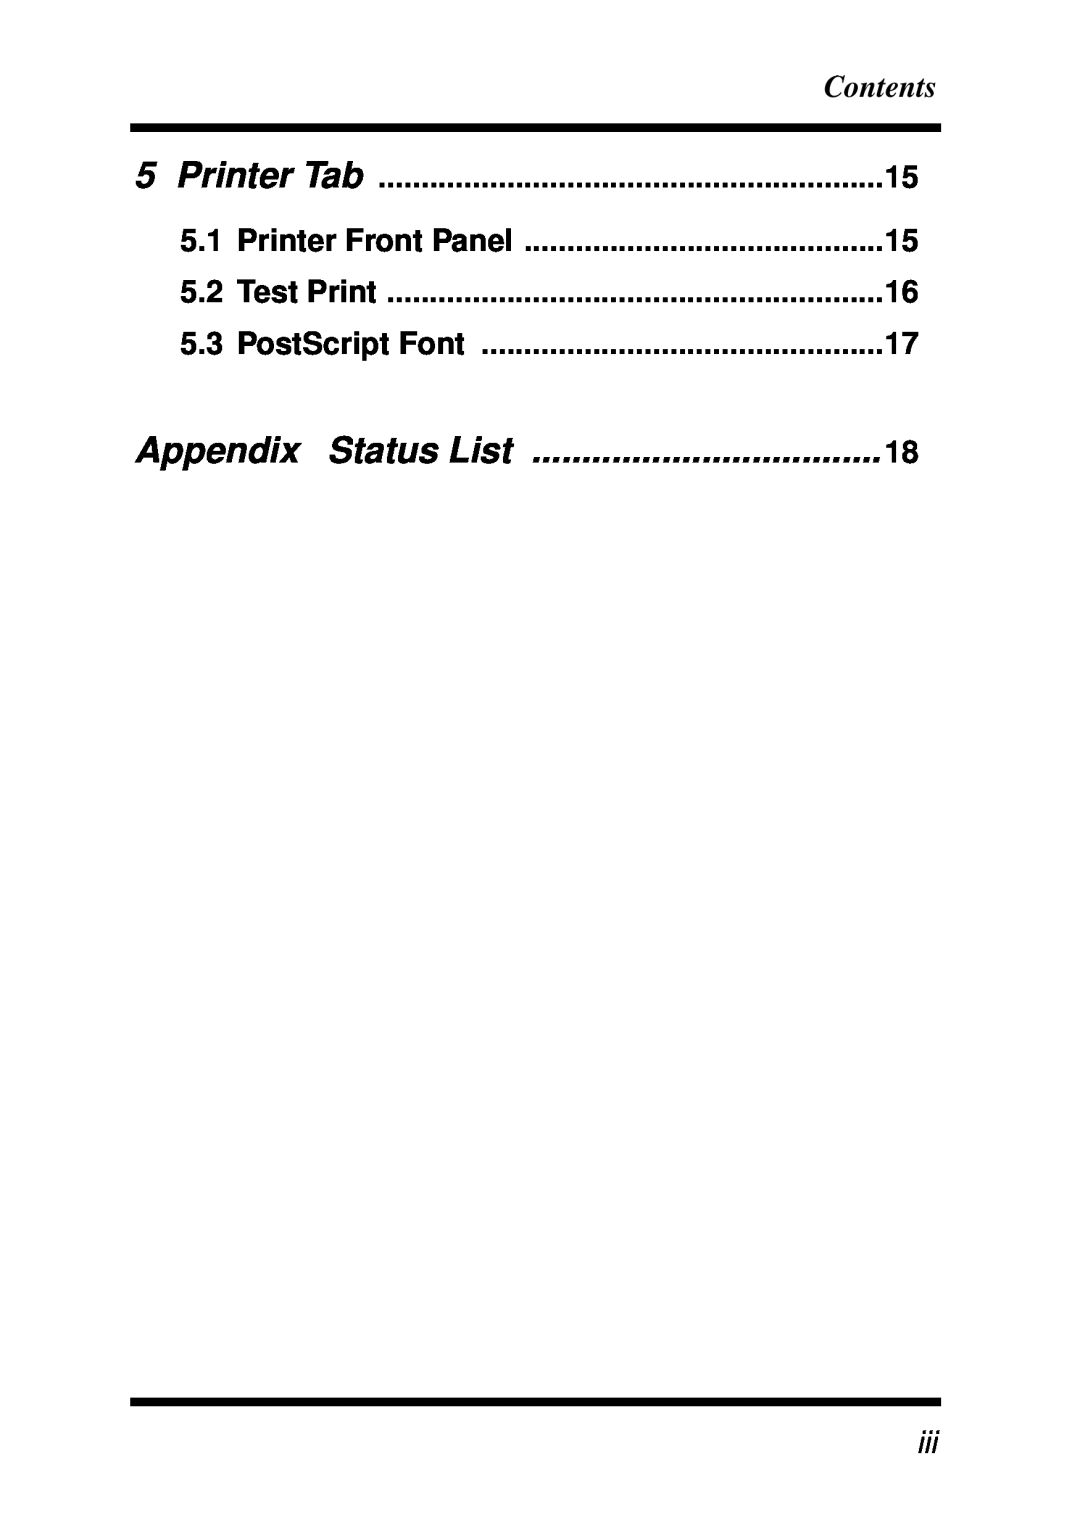 Minolta X3e, Z4 manual Appendix Status List, Contents, Printer Tab, Printer Front Panel, Test Print, PostScript Font 